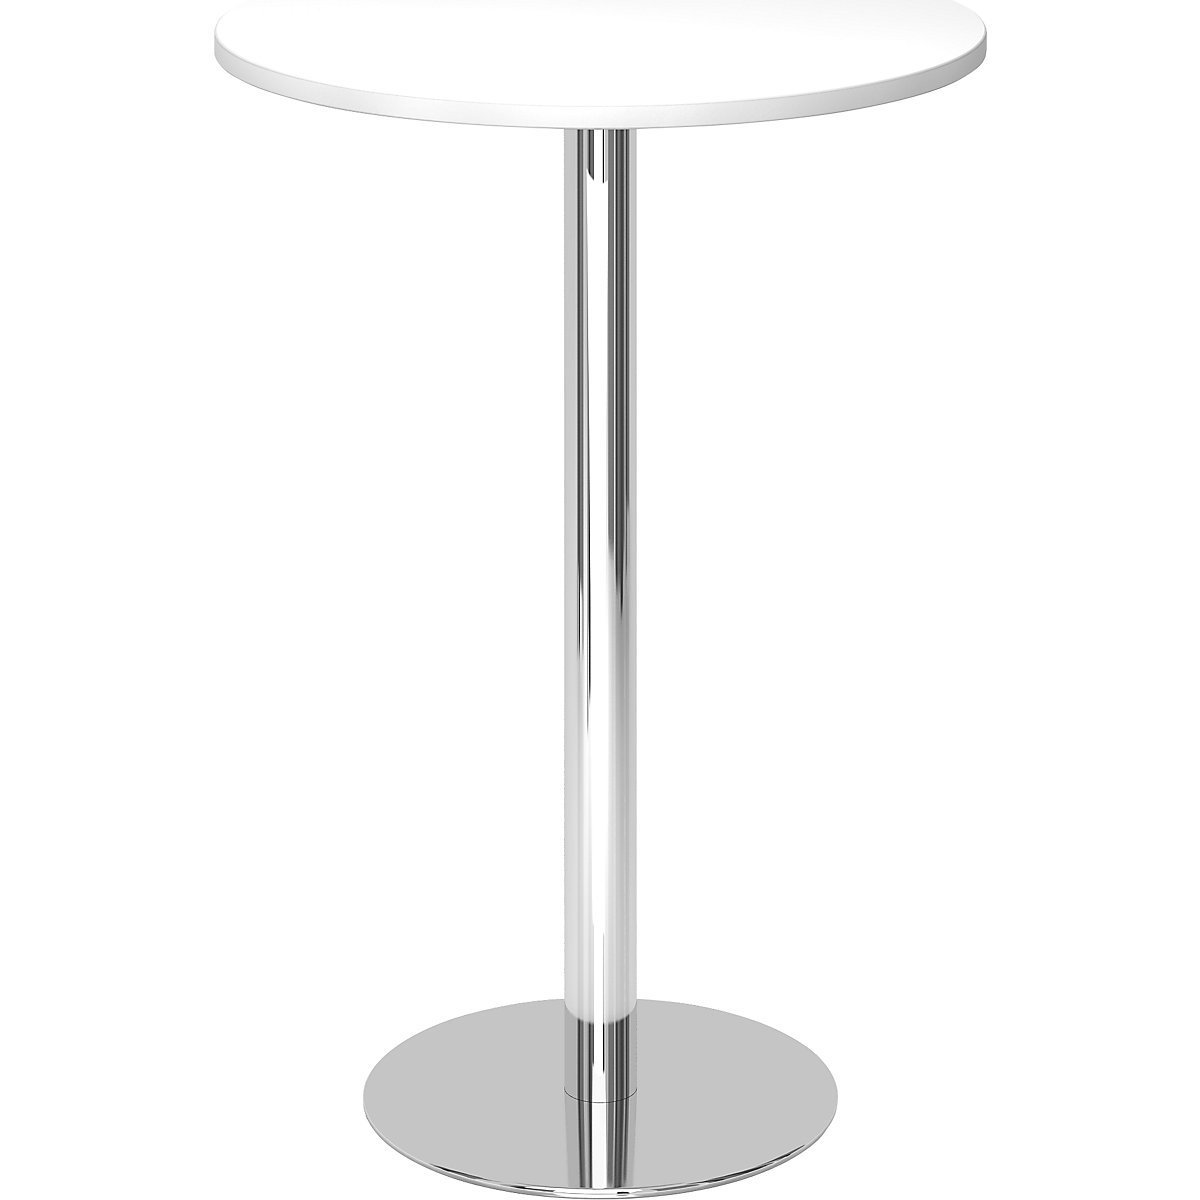 Állóasztal, Ø 800 mm, 1116 mm magas, krómozott váz, fehér asztallap